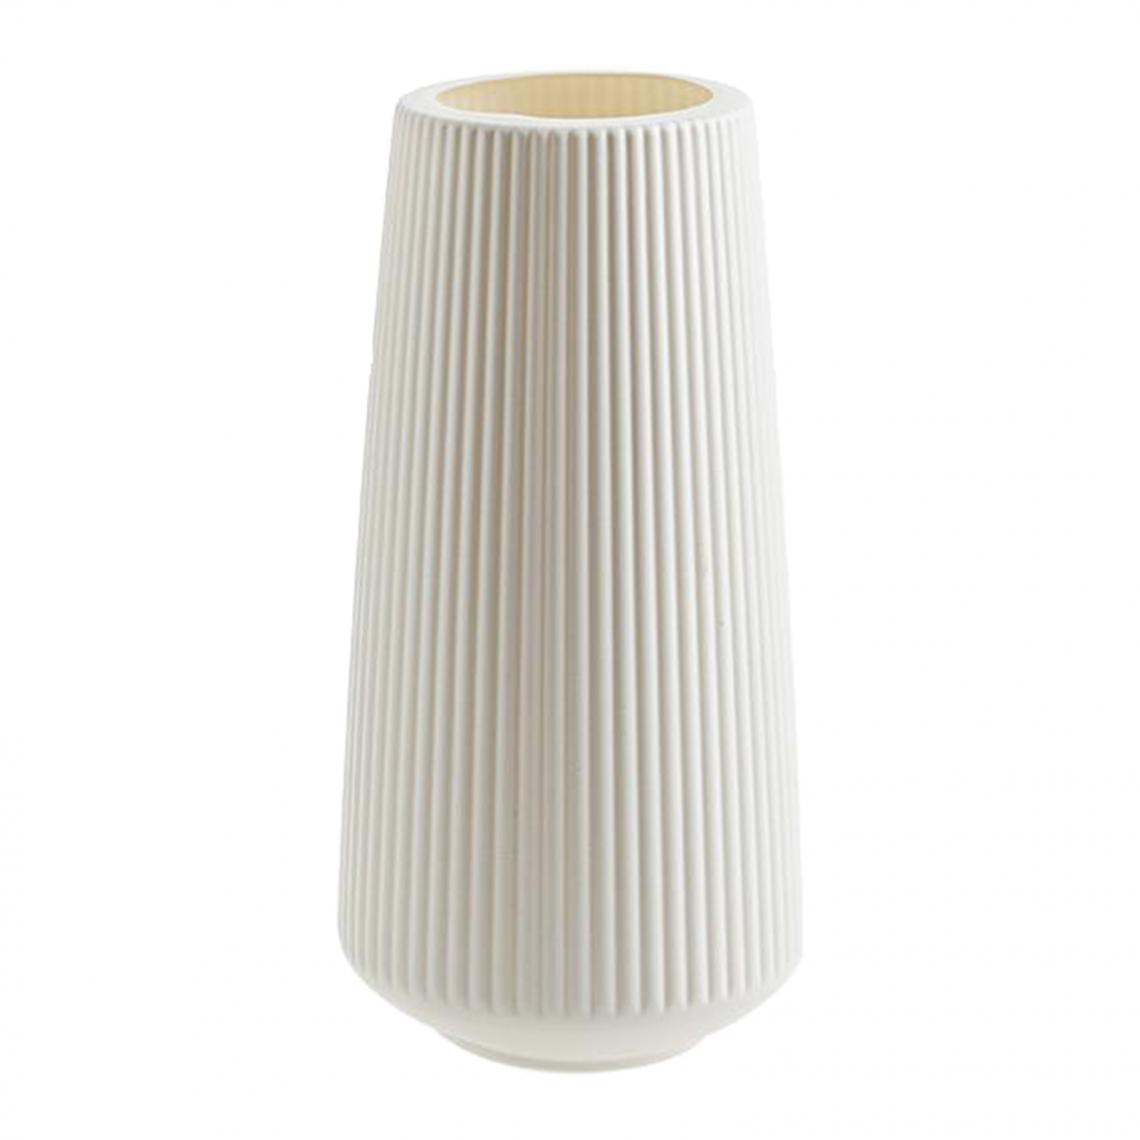 marque generique - Décoration De Vase à Fleurs Pot De Fleur En Plastique Cadeau De Pendaison De Crémaillère Style Blanc 2 - Pots, cache-pots